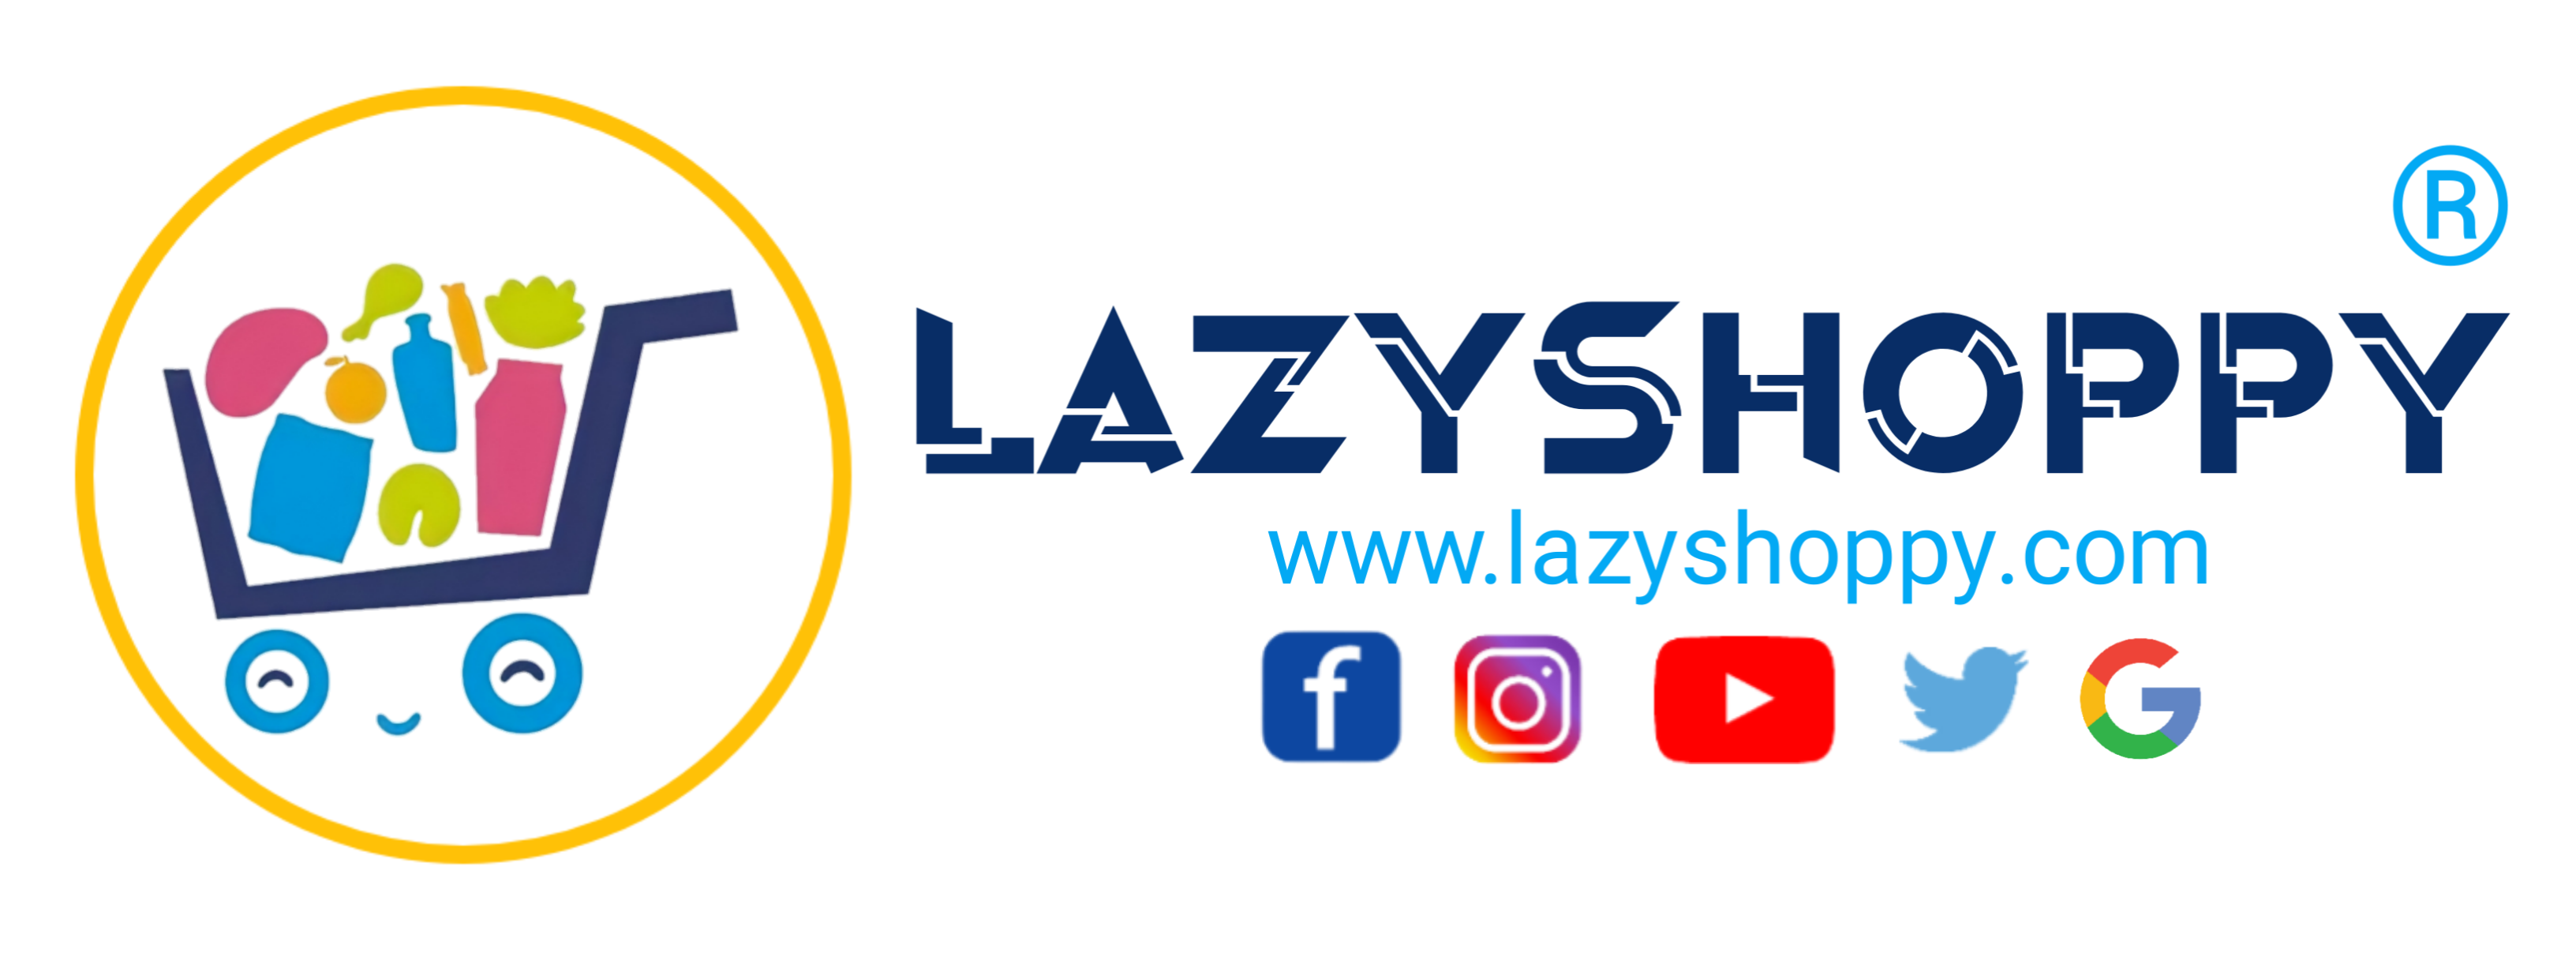 LazyShoppy